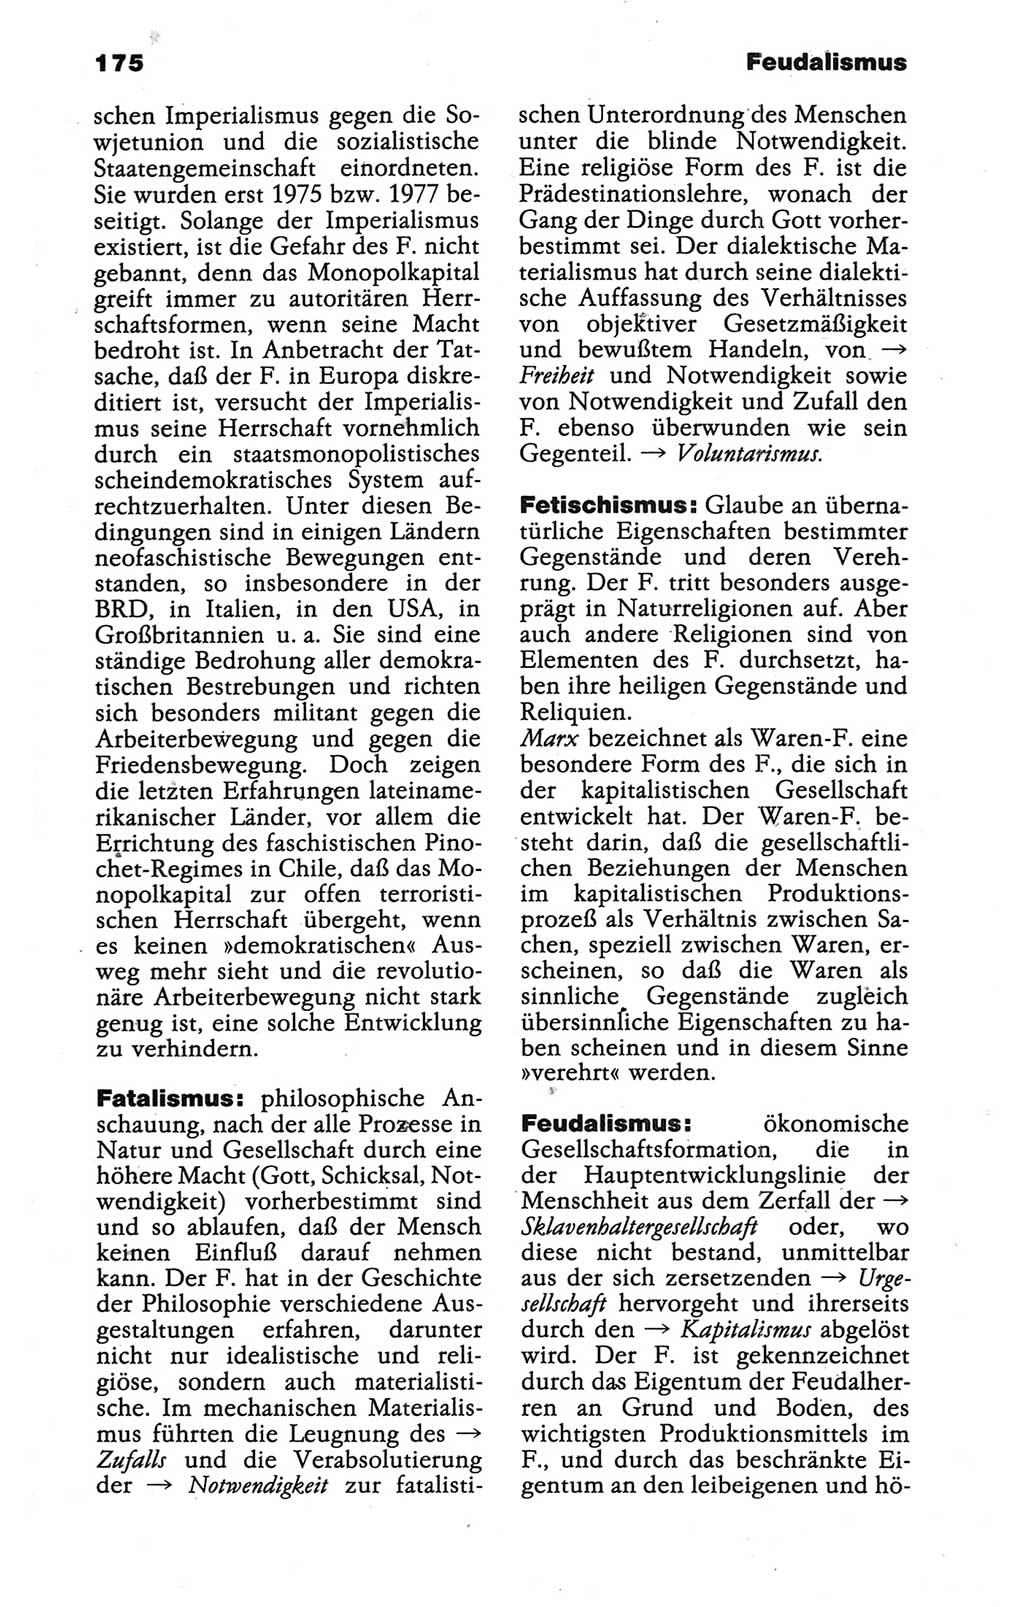 Wörterbuch der marxistisch-leninistischen Philosophie [Deutsche Demokratische Republik (DDR)] 1986, Seite 175 (Wb. ML Phil. DDR 1986, S. 175)